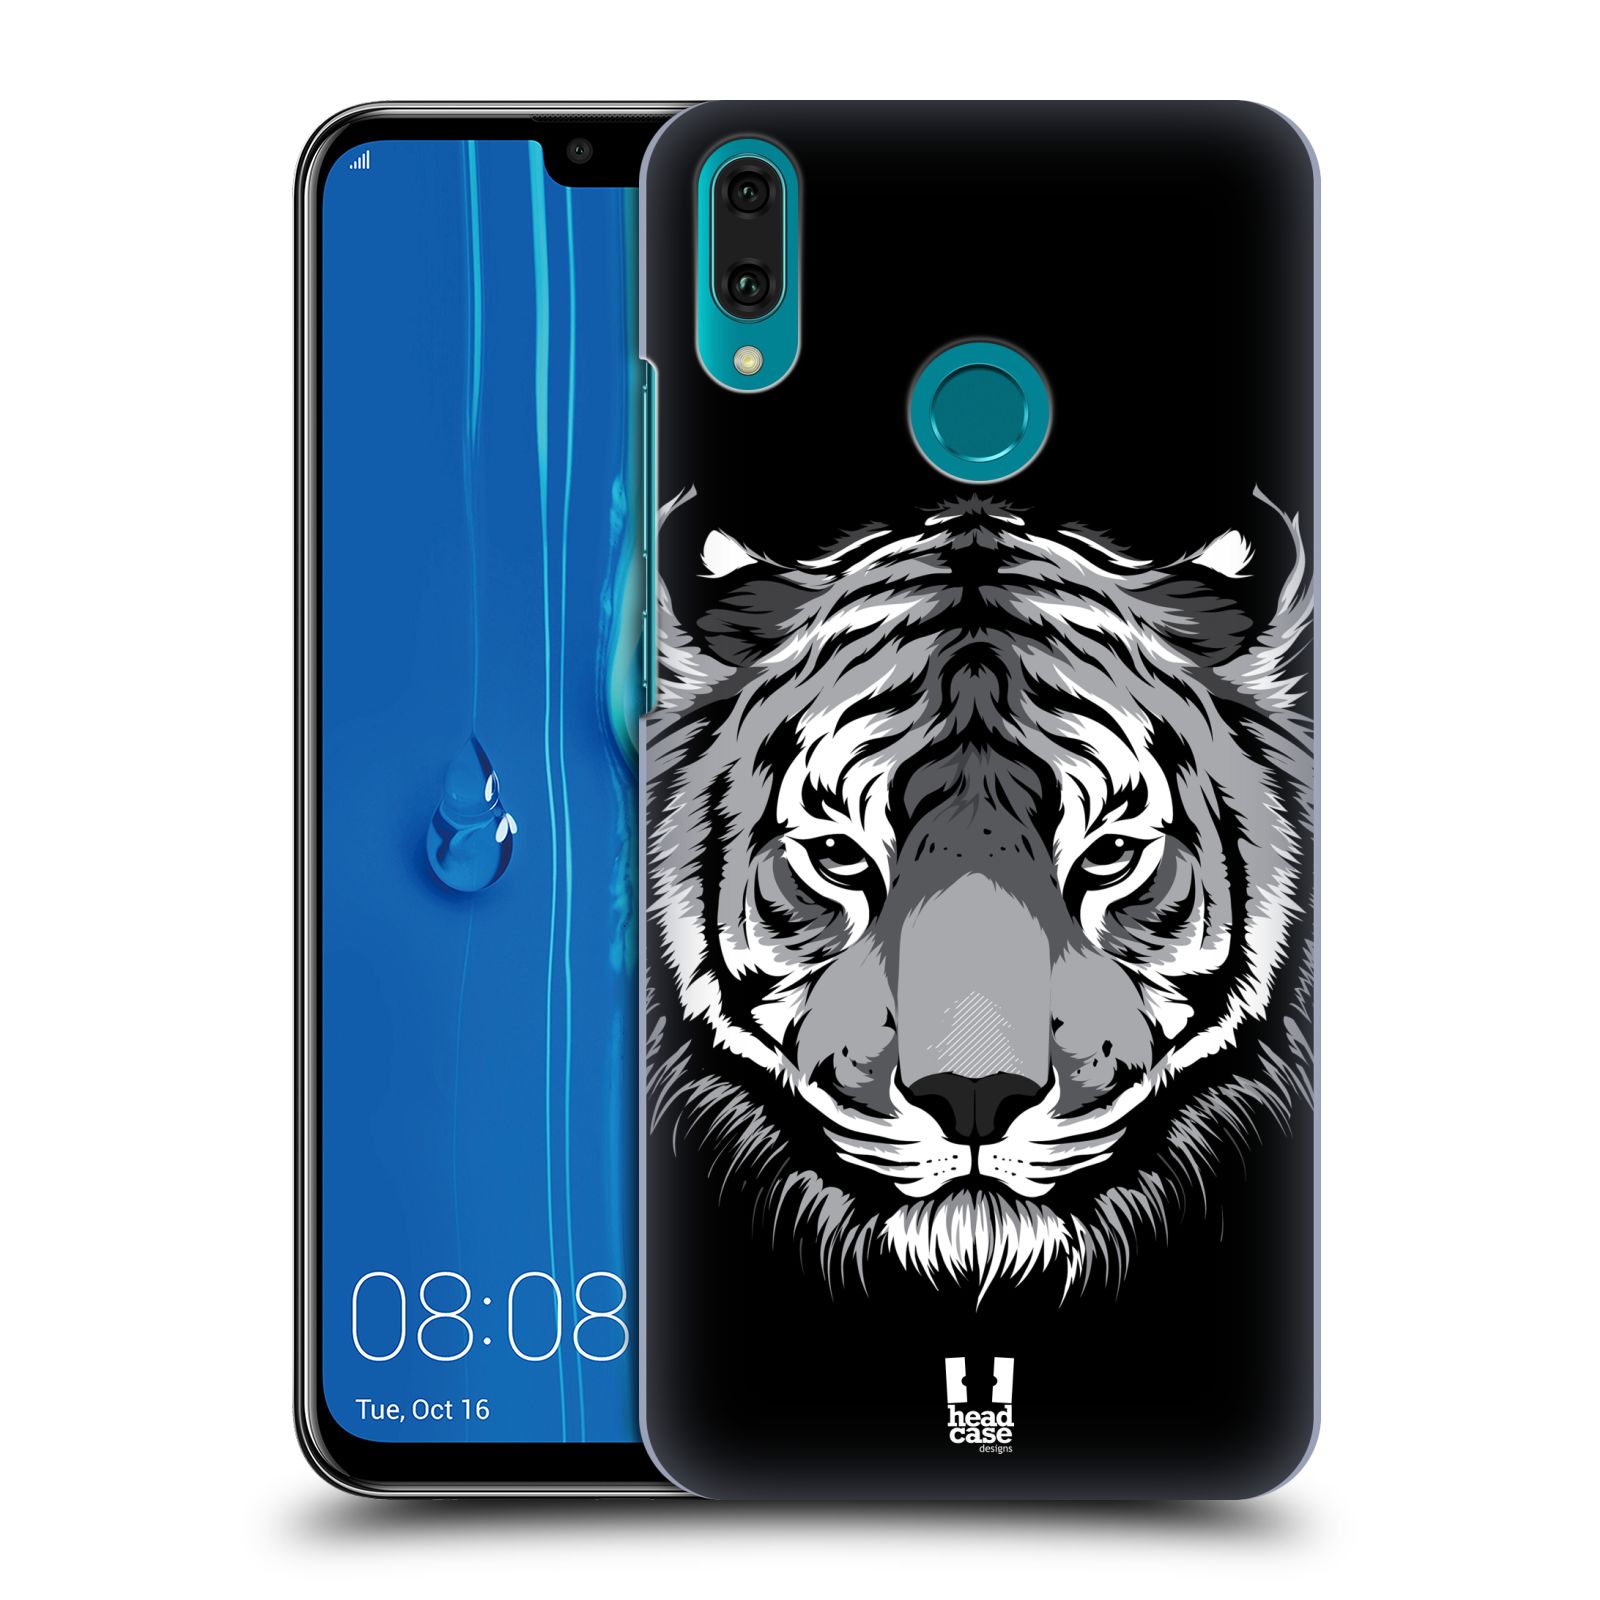 Pouzdro na mobil Huawei Y9 2019 - HEAD CASE - vzor Zvíře kreslená tvář 2 tygr